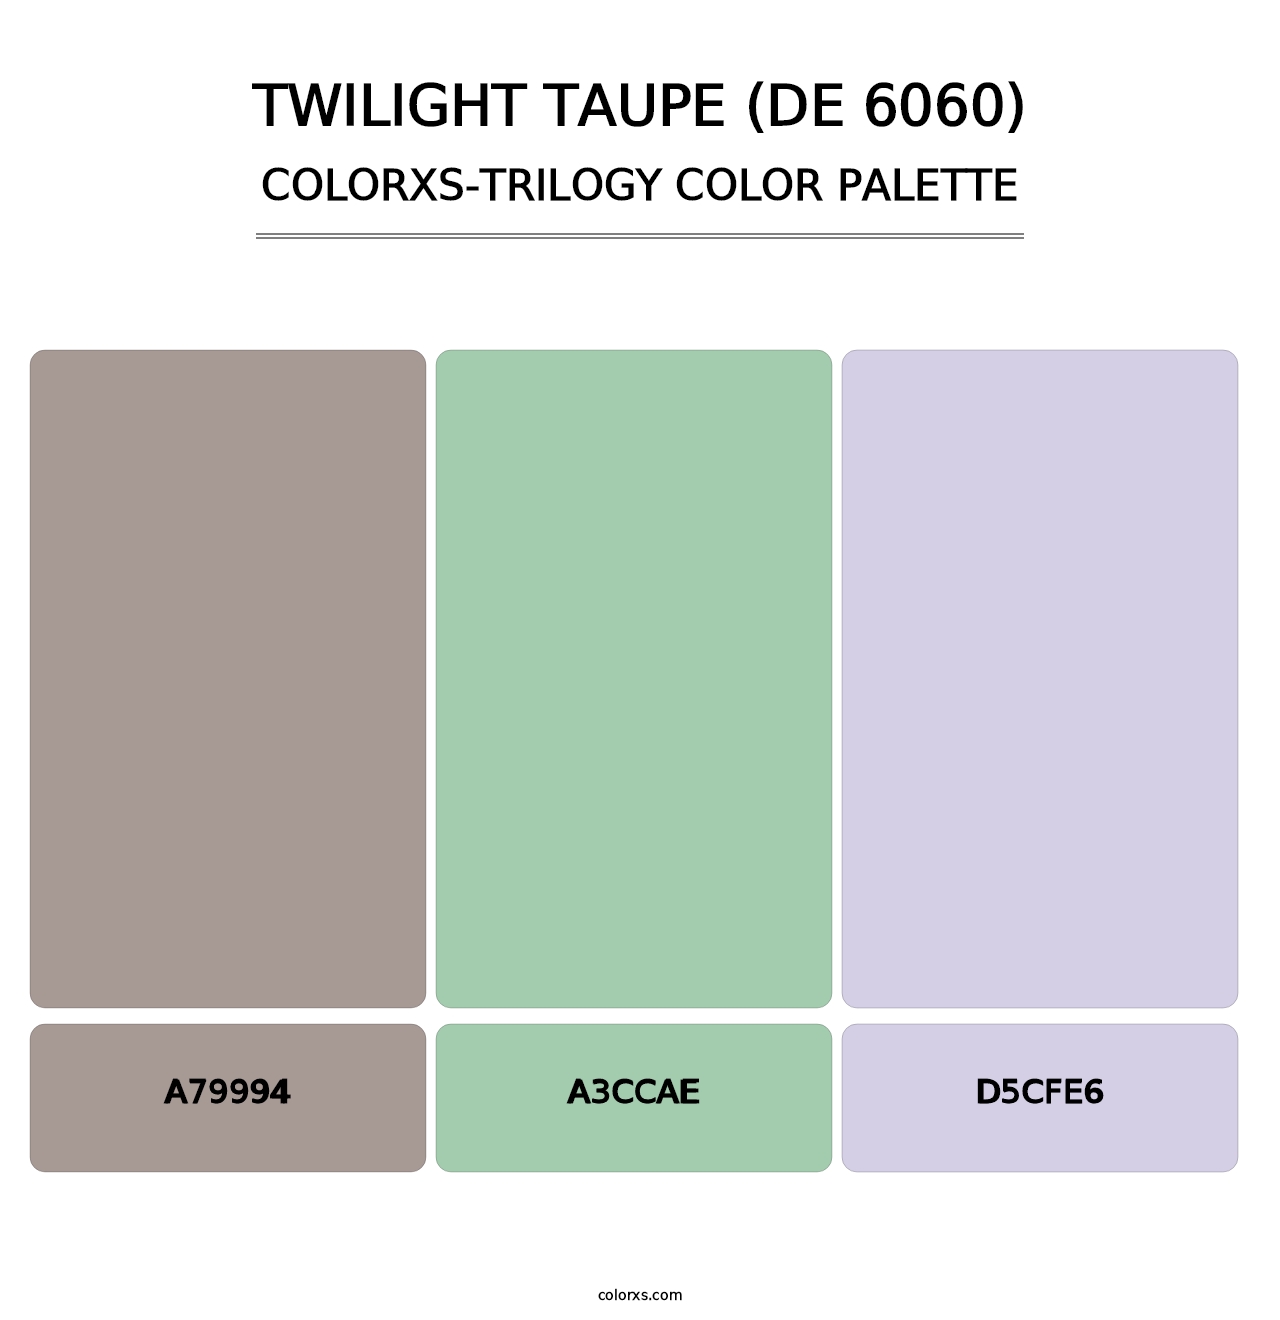 Twilight Taupe (DE 6060) - Colorxs Trilogy Palette